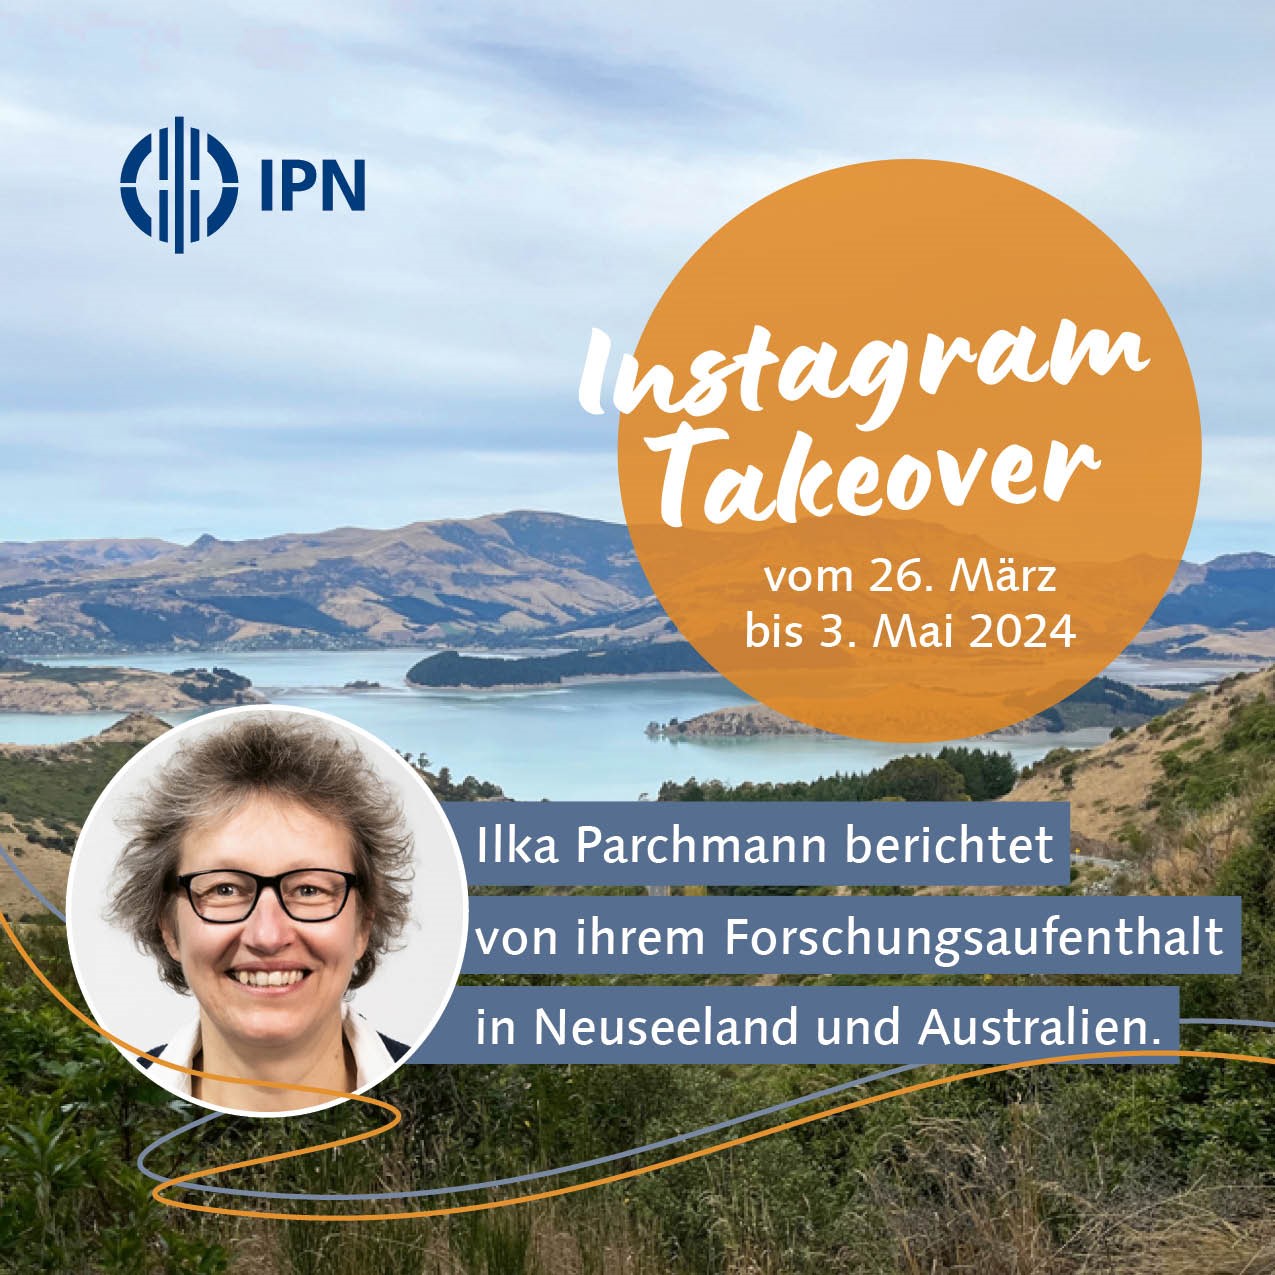 Portraitfoto von Ilka Parchmann, hinter ihr ein Ladnschaftsfoto aus Neuseeland mit der Information: Ilka Parchmann berichtet von ihrem Forschungsaufenthalt vom 26. März bis zum 3. Mai 2024.